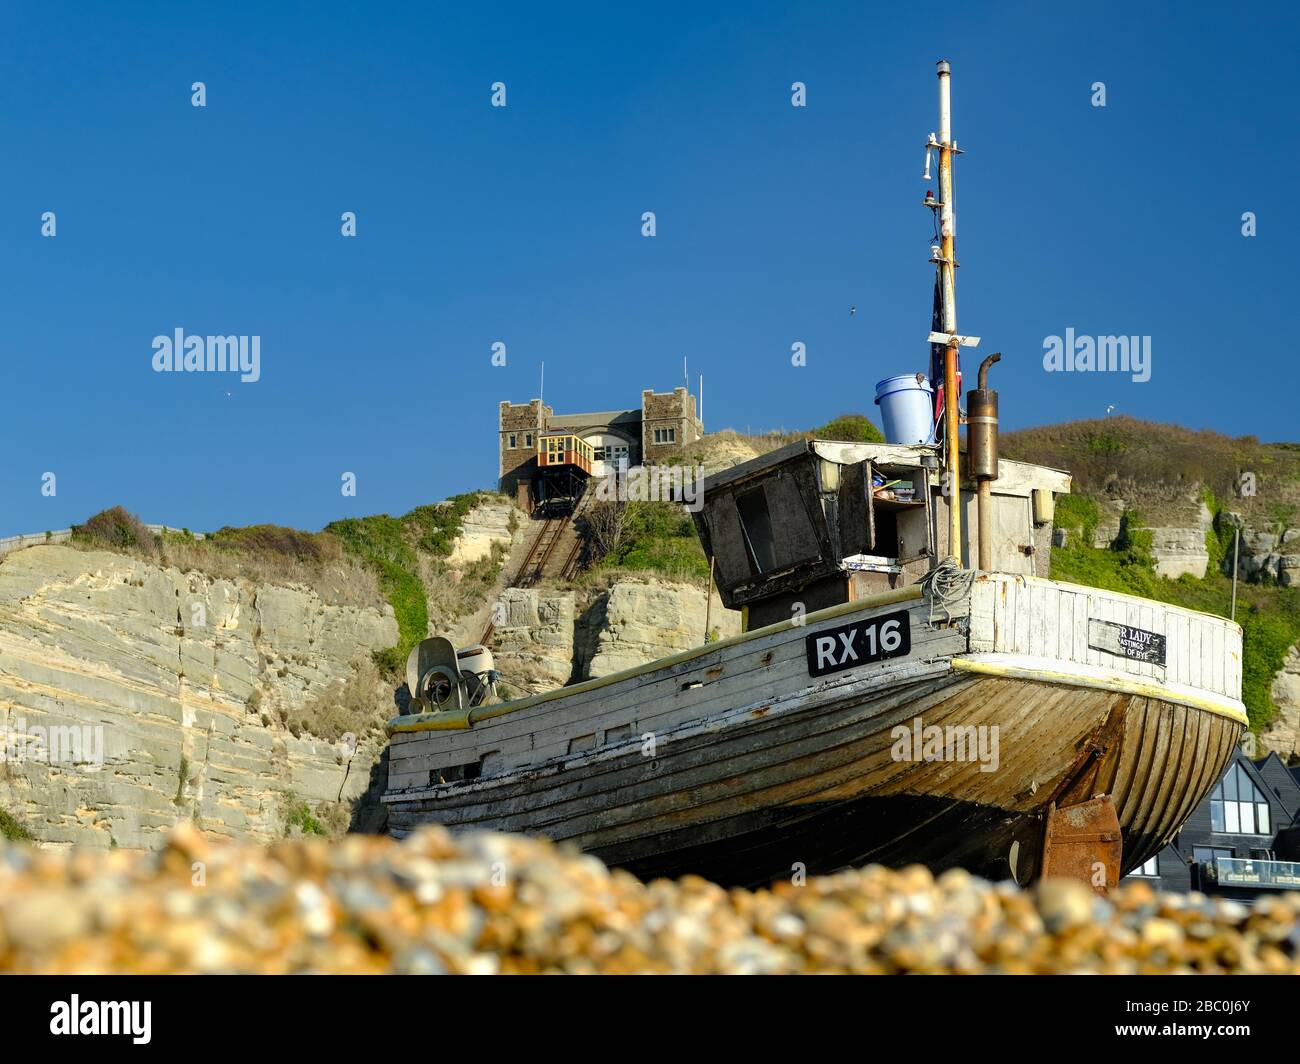 Barco de pesca en la playa de guijarros en Hastings, Reino Unido, con el funicular al fondo Foto de stock